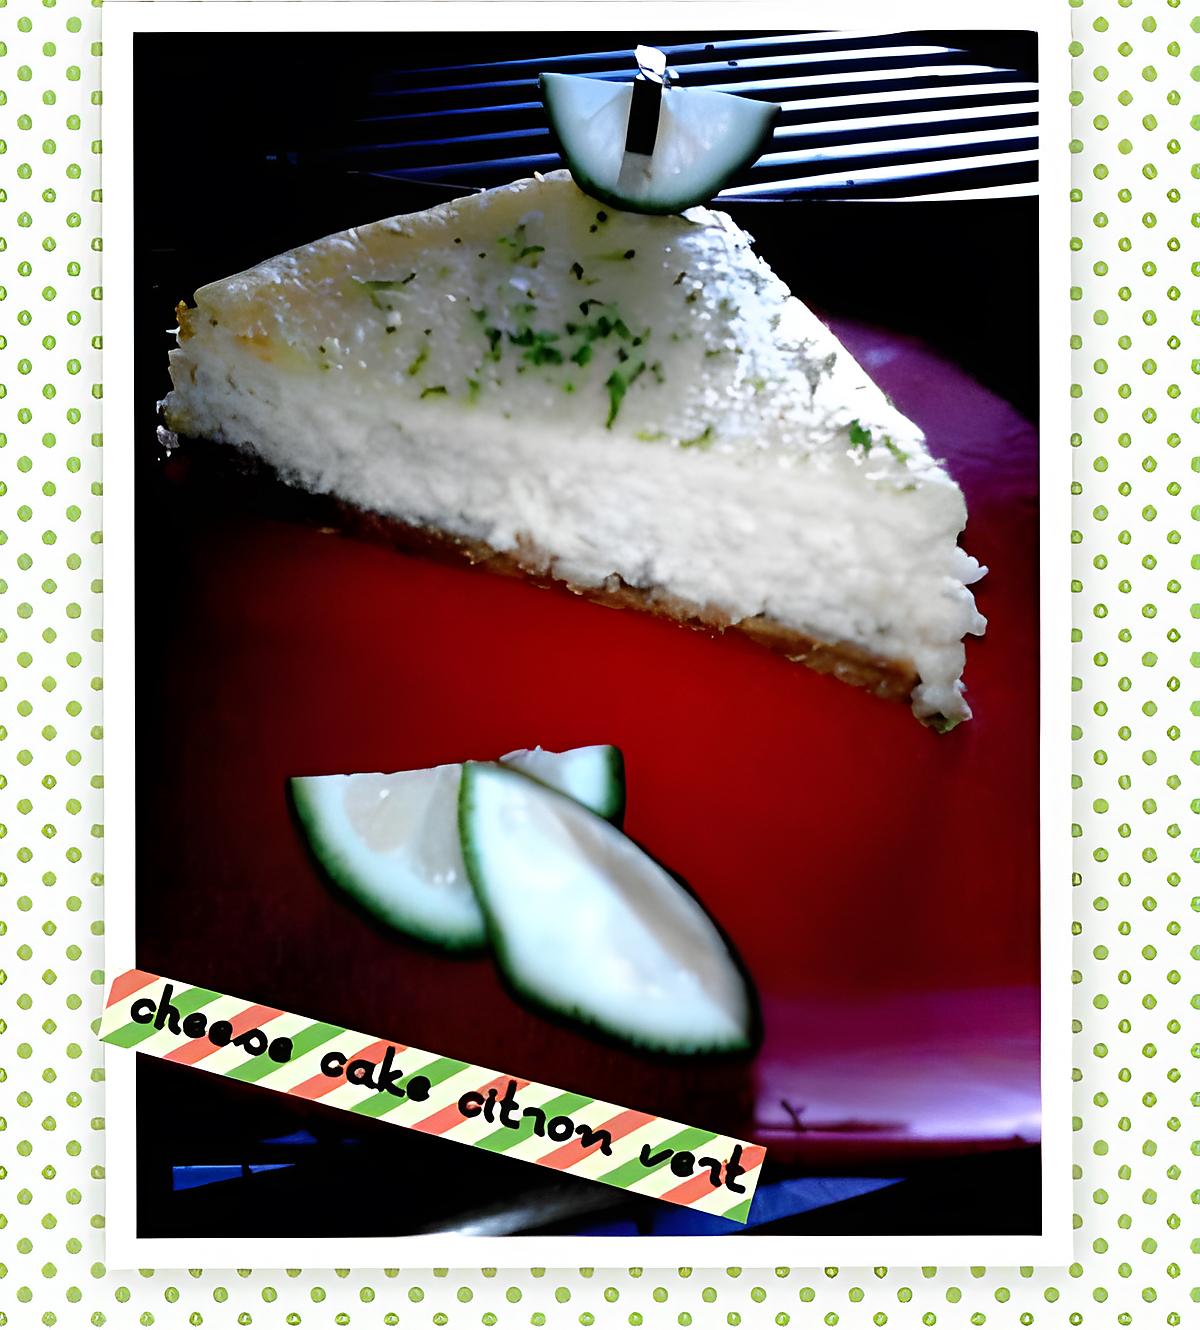 recette Cheese cake citron vert,le goût sensationnel...